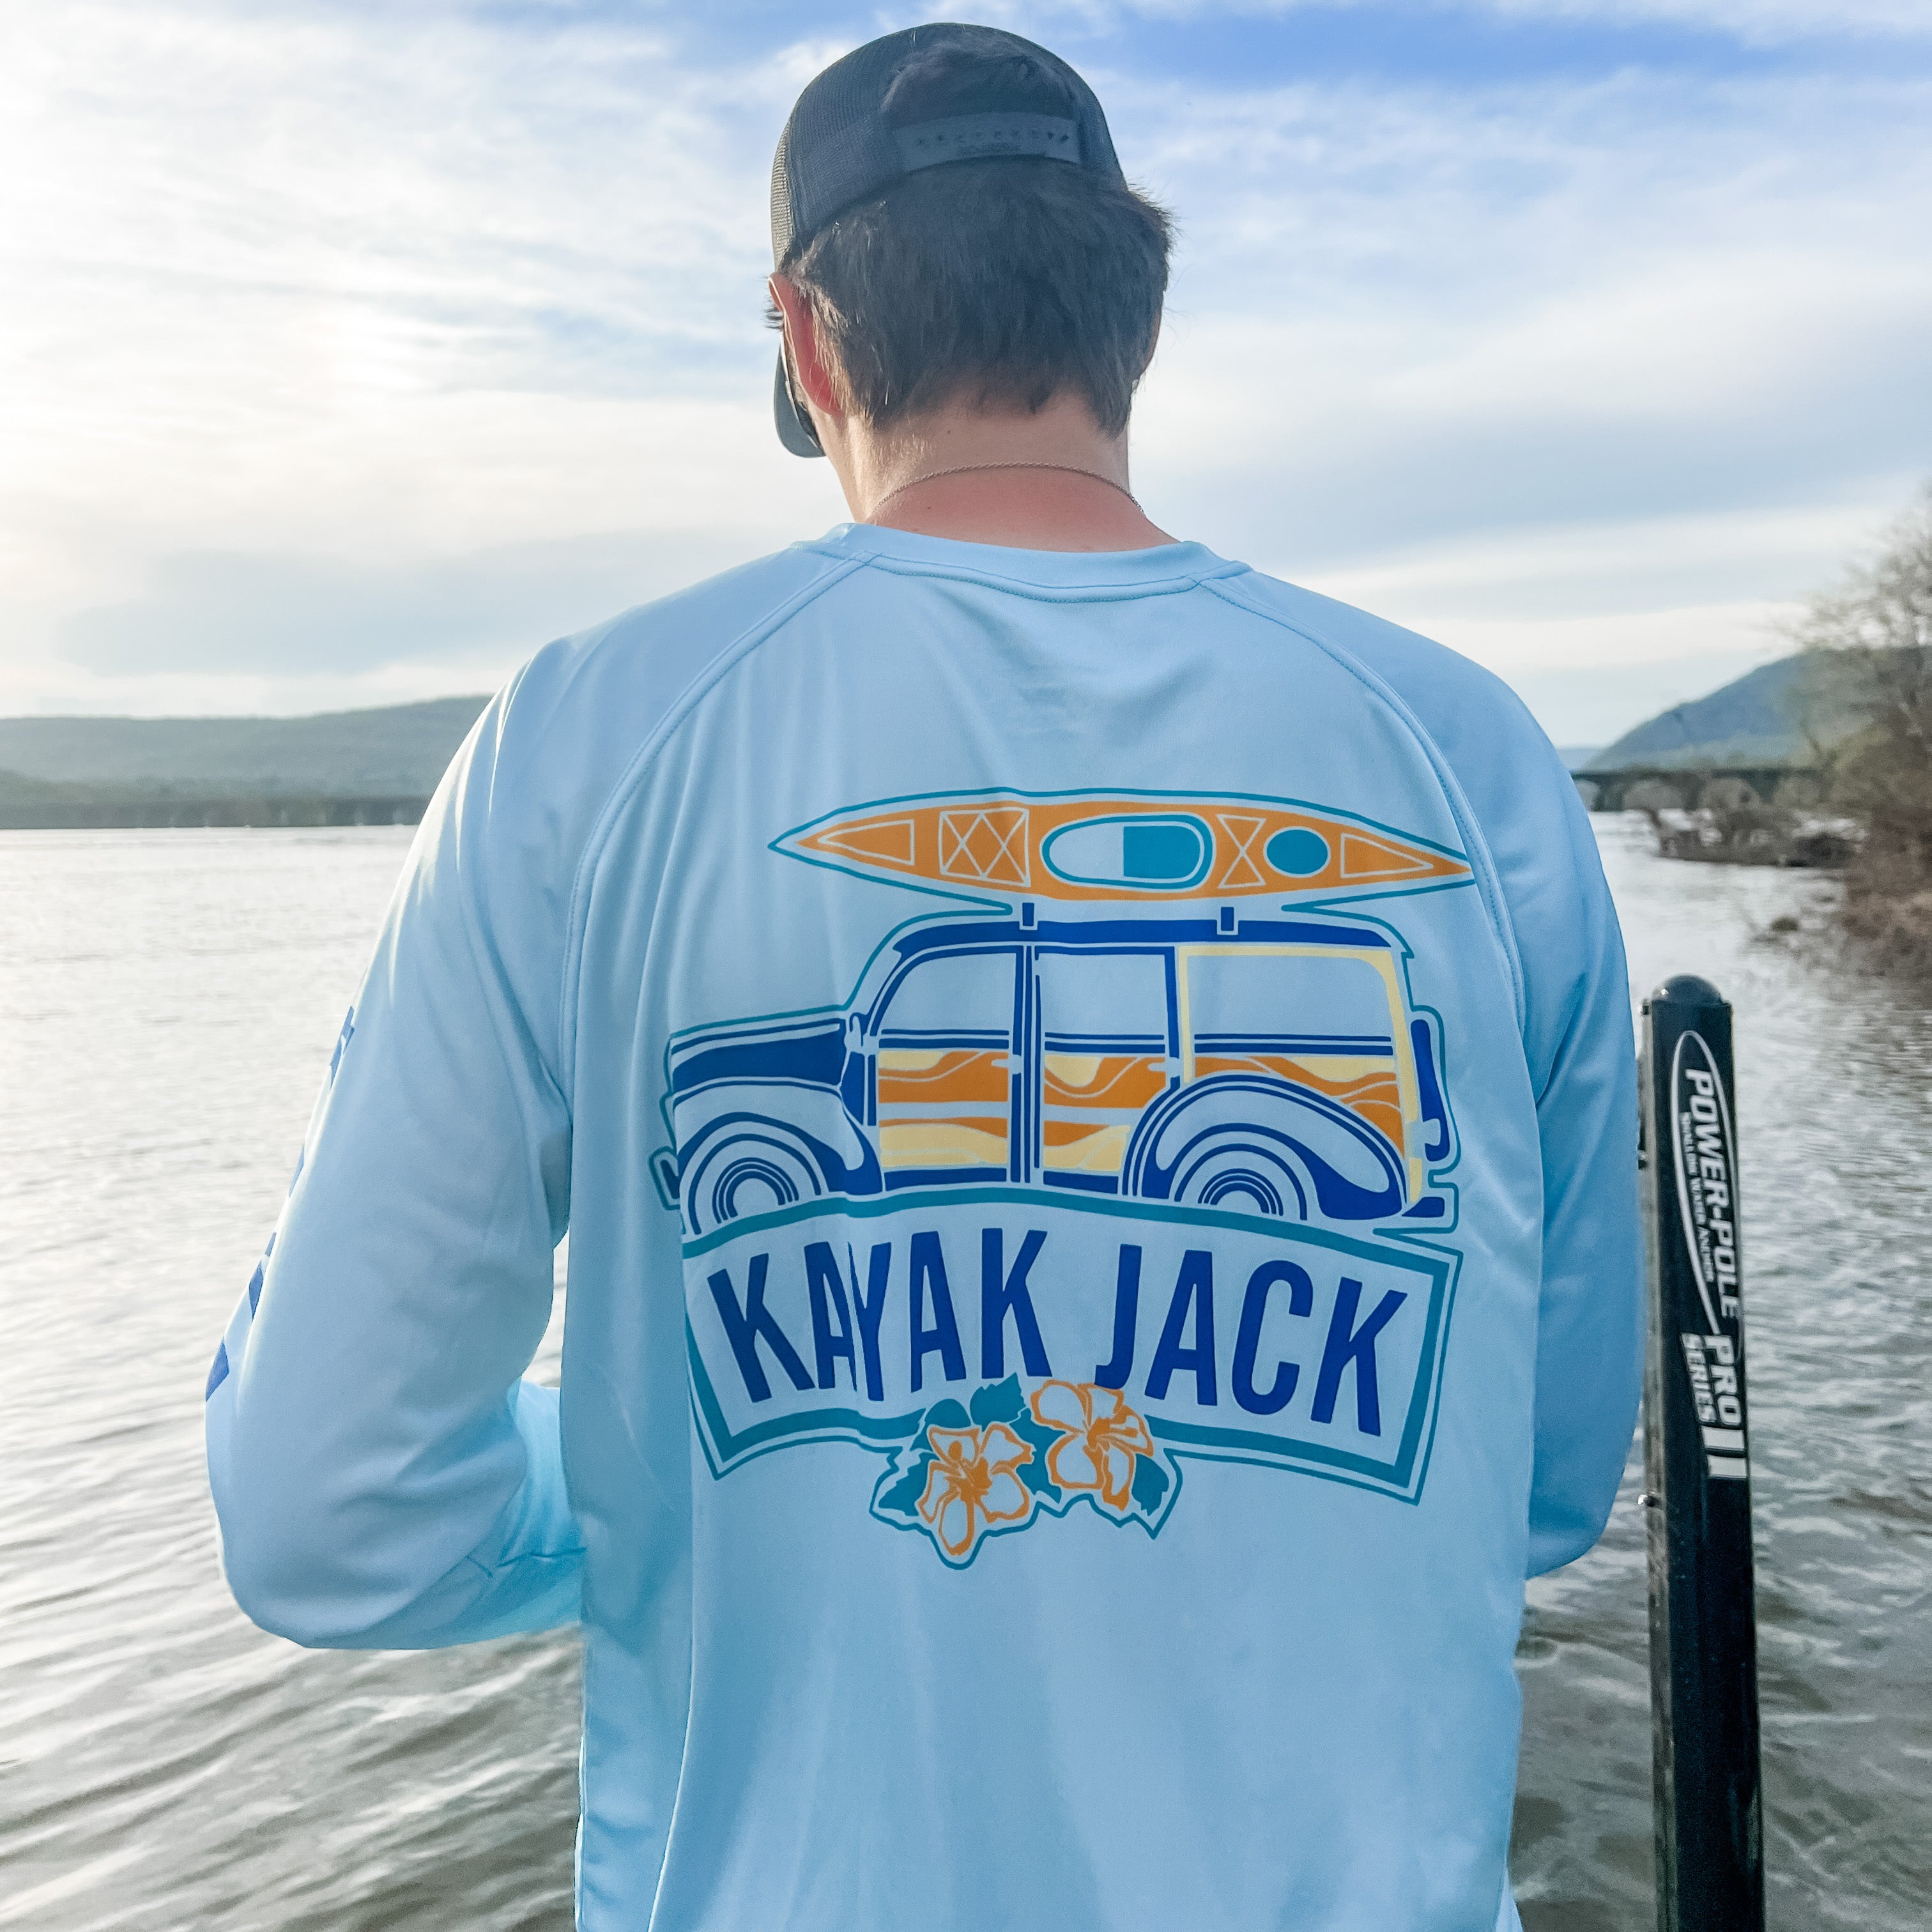 Kayak Fishing Performance SPF Shirt Blue PFG - Kayak Jack